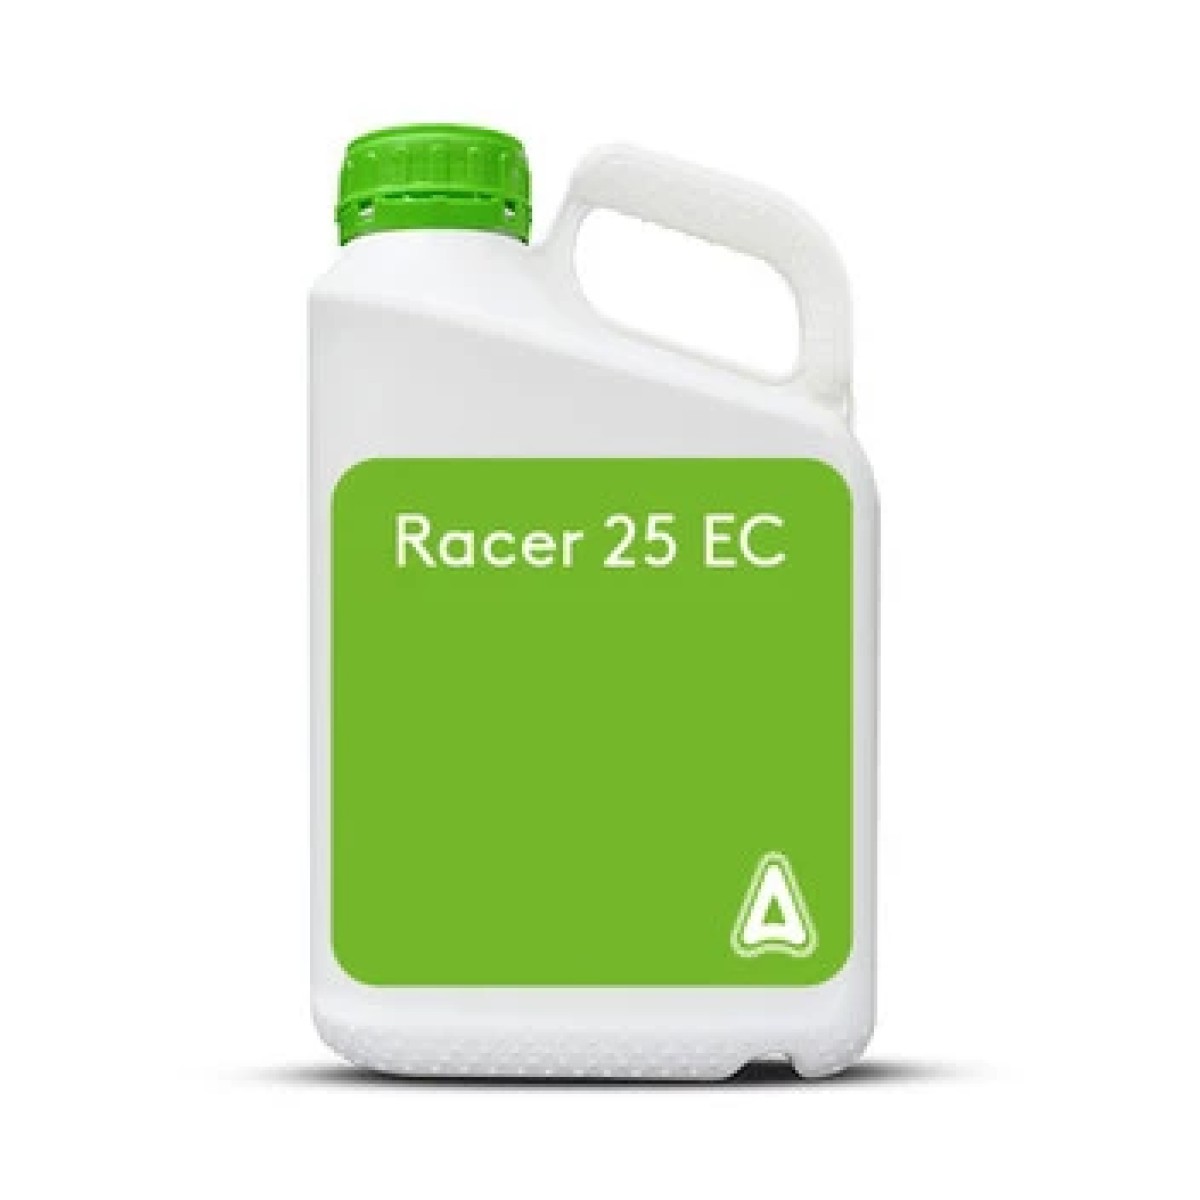 Racer 25 EC